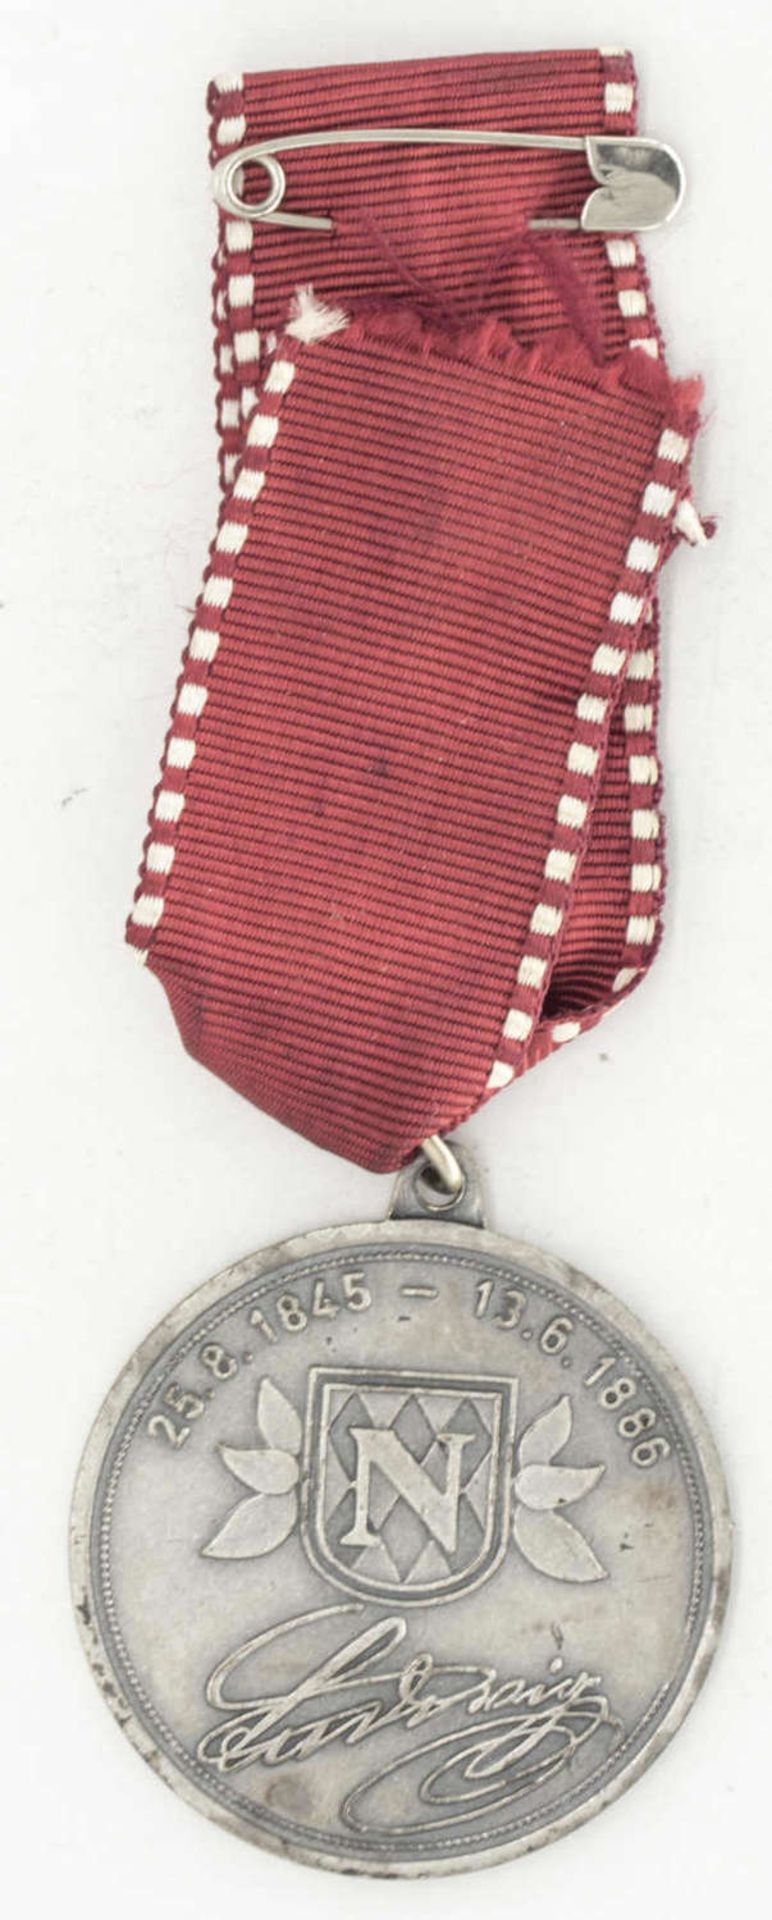 Bayern, Medaille Ludwig II. König von Bayern am Band. Av: Büste Ludwig II. nach rechts. Rv. 25. 8. - Bild 2 aus 2